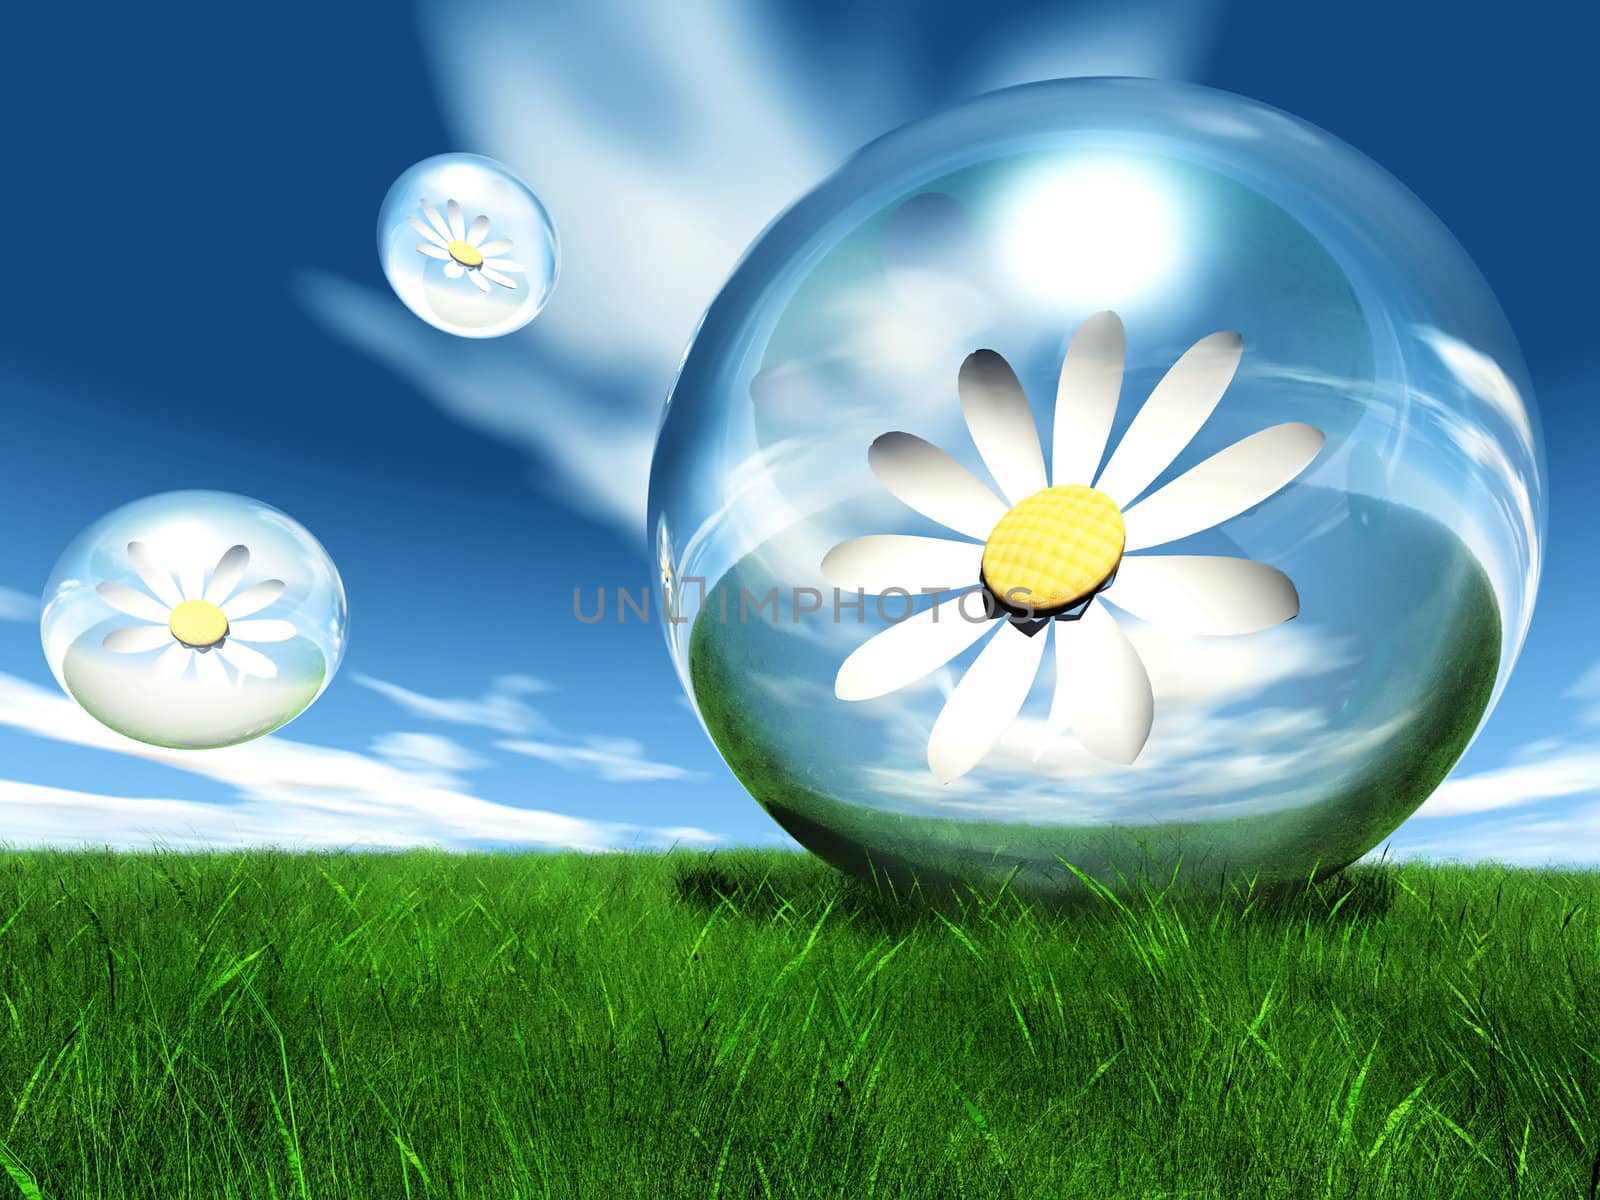 flower in the bubble by njaj